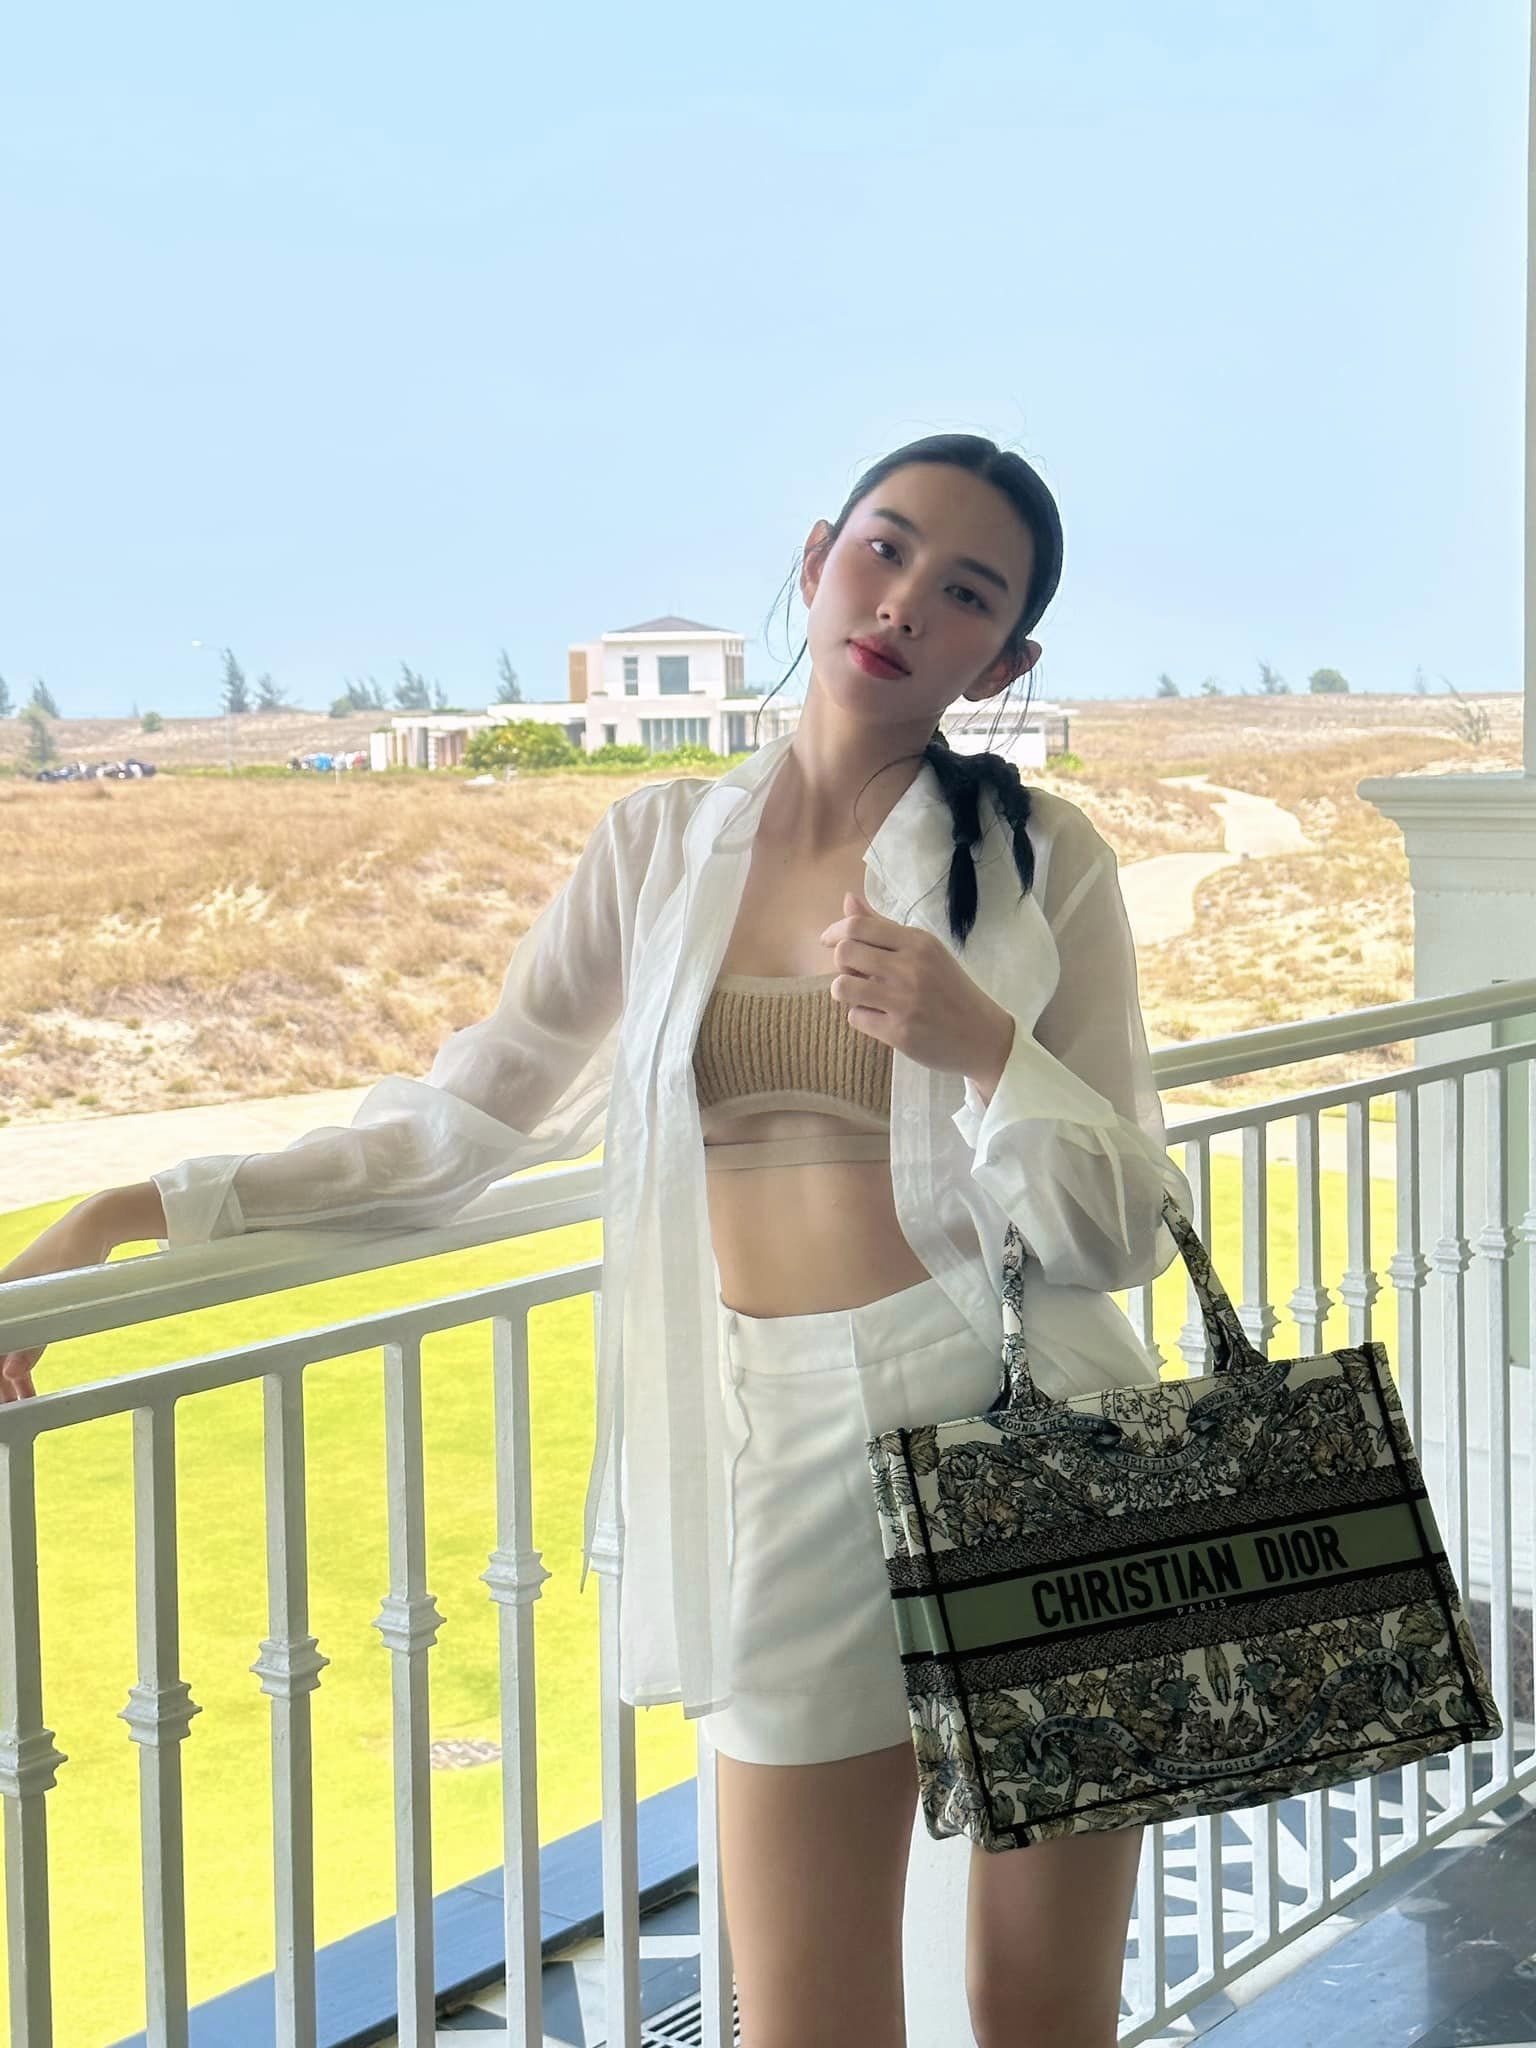 Hoa hậu Thùy Tiên thất vọng vì bị bịa đặt tin đồn với Quang Linh Vlog - ảnh 5